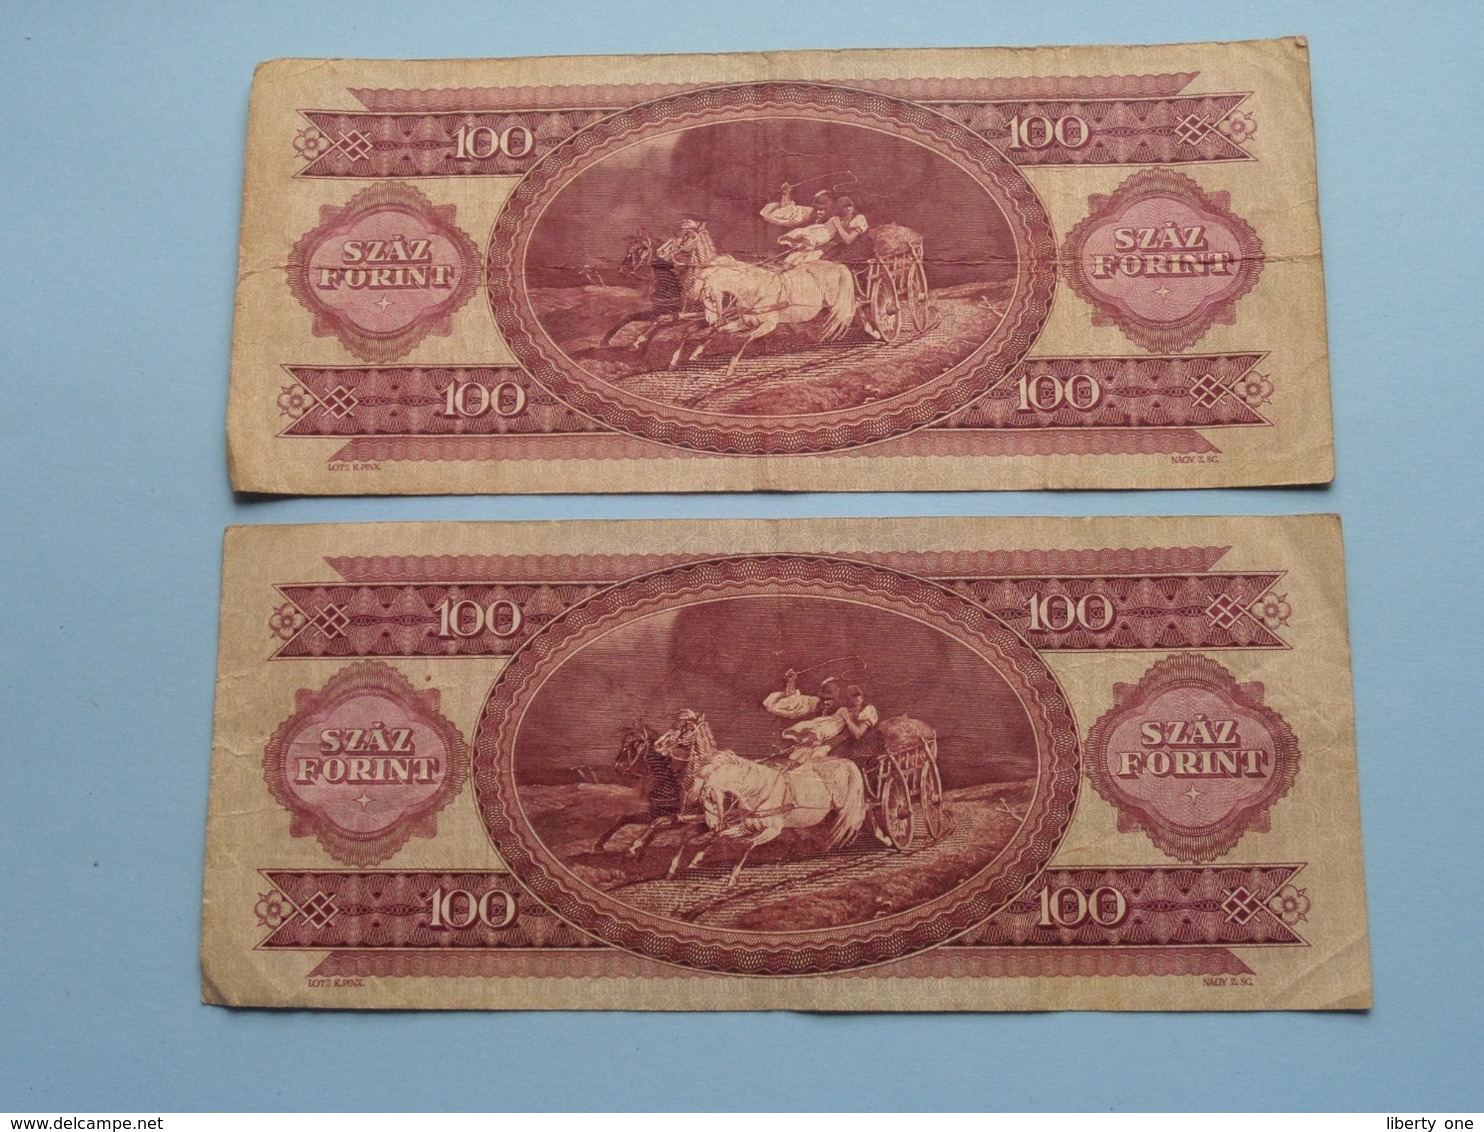 100 SZAZ Forint ( B972 051405 - B742 016290 ) 1984 - Magyar Nermzeti Bank ( For Grade, Please See Photo ) 2 Pcs.! - Hongrie